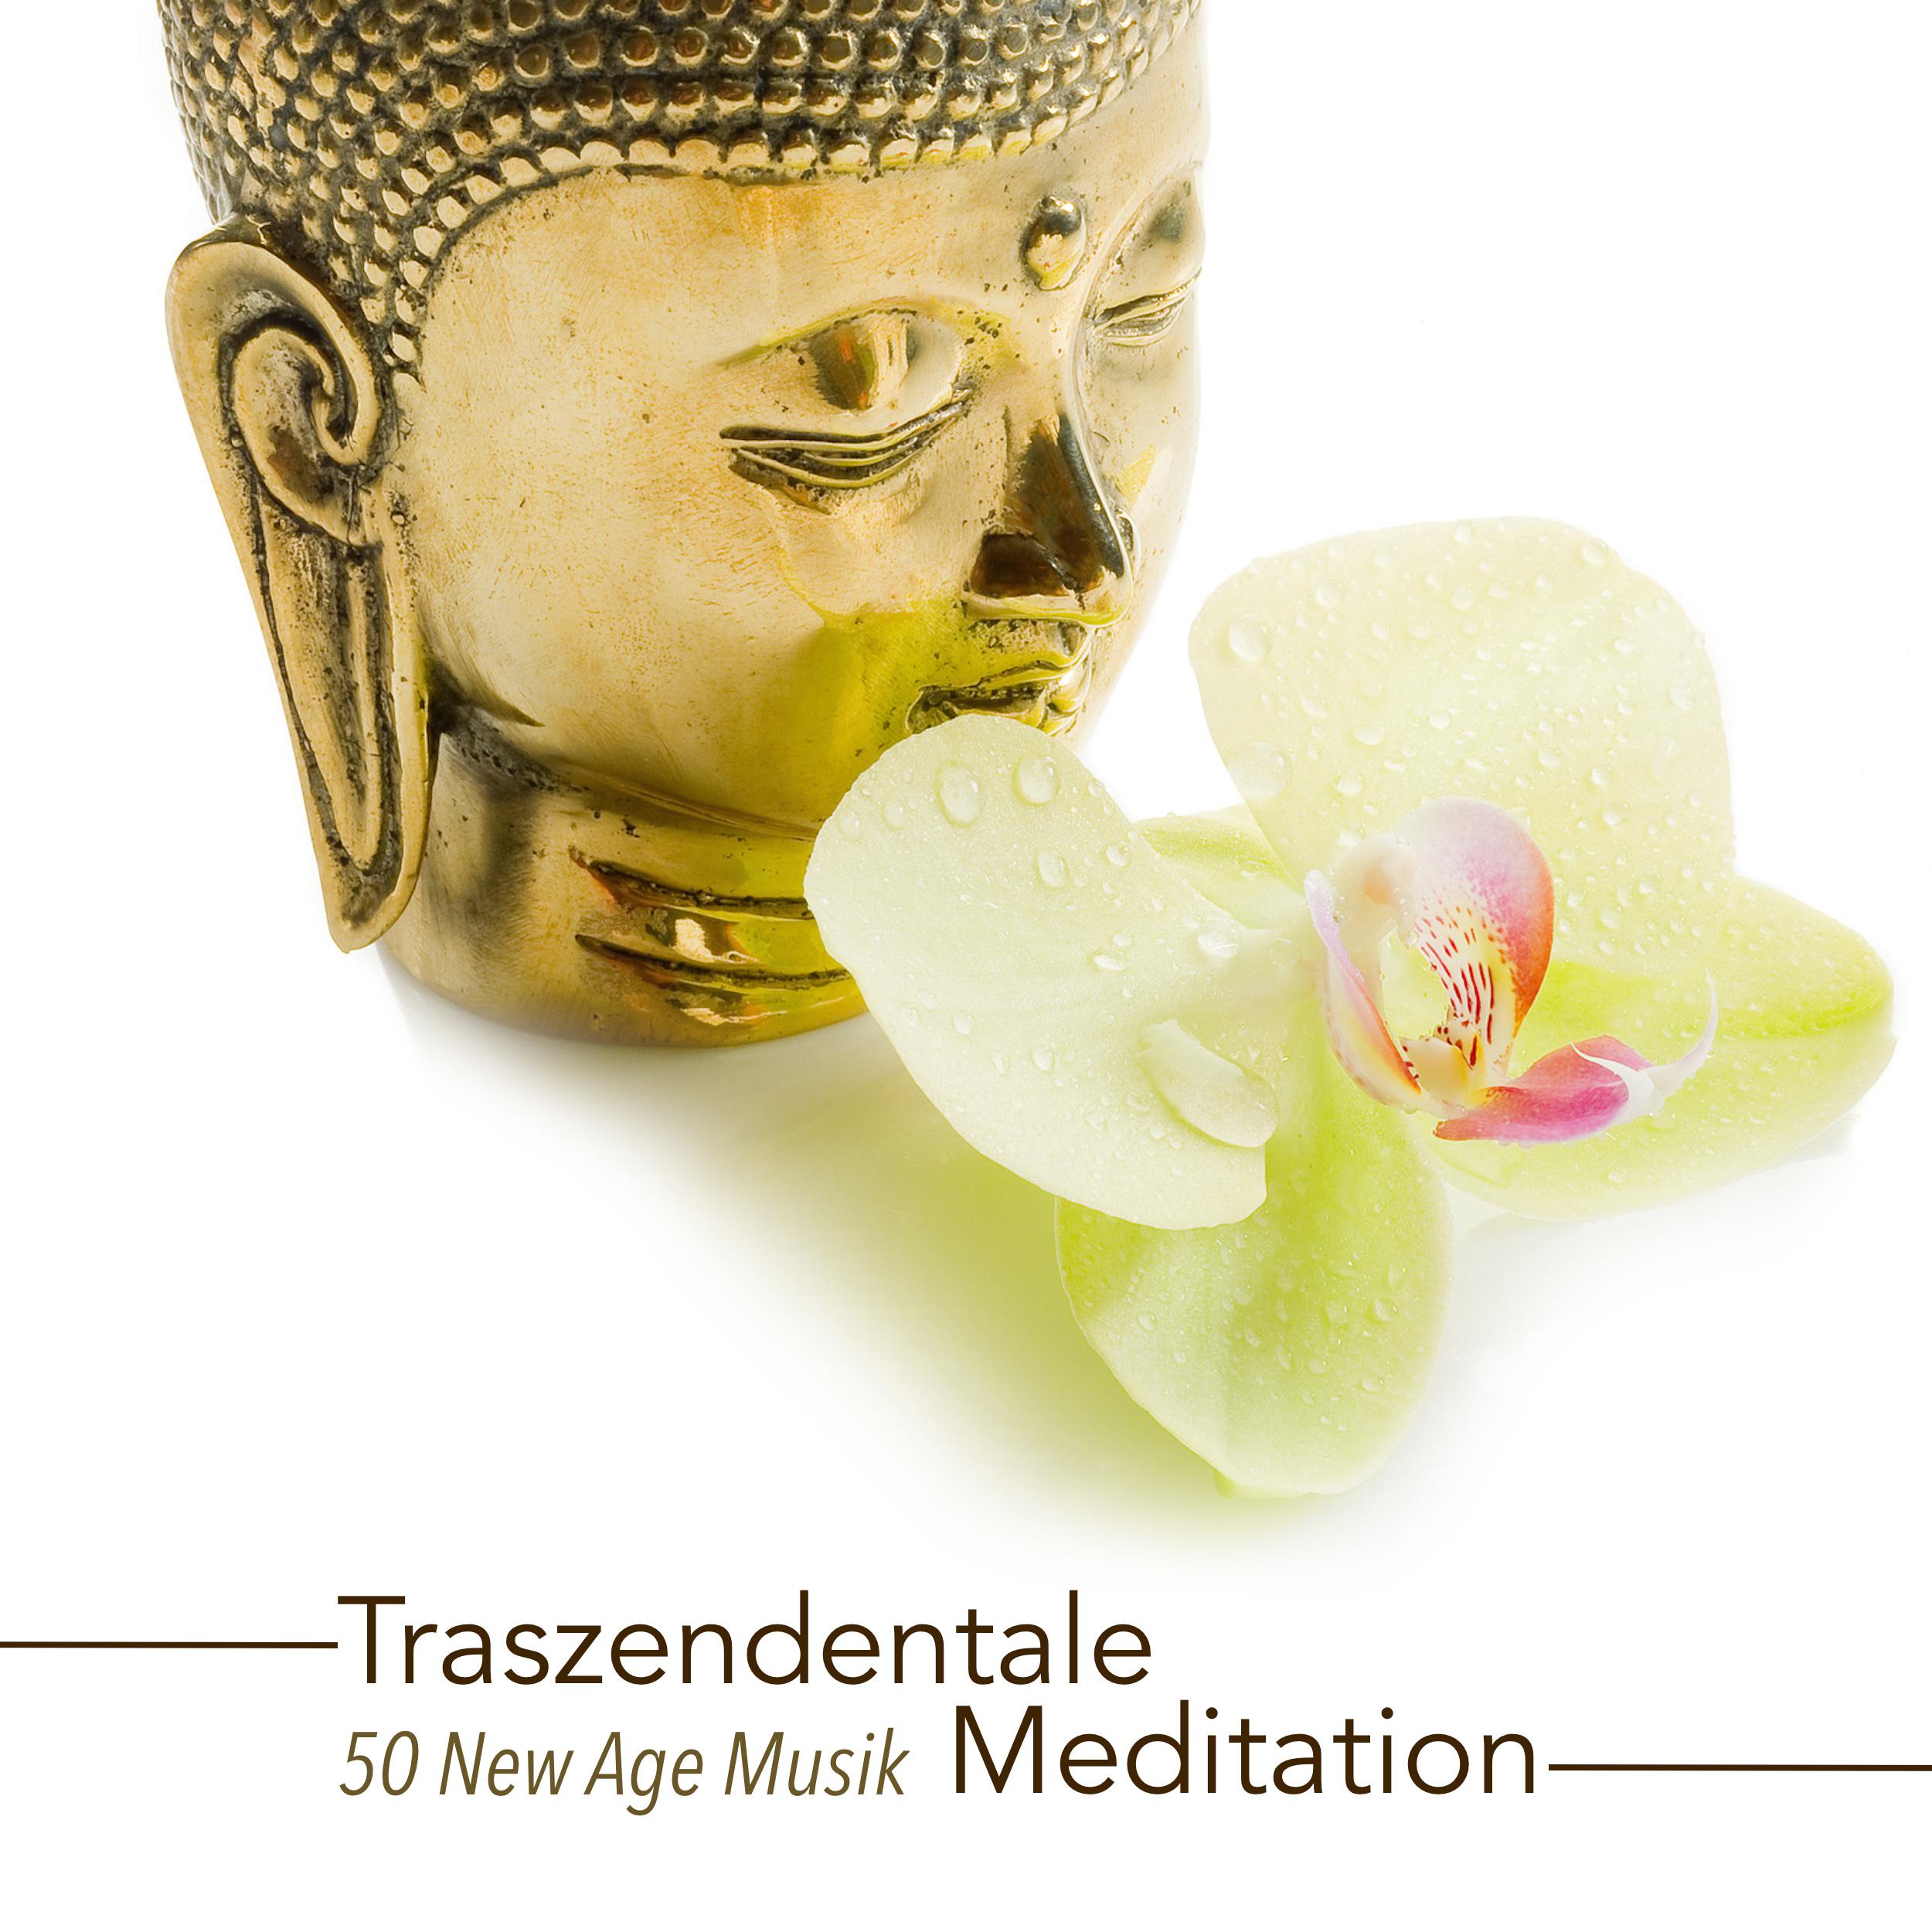 Traszendentale Meditation - 50 New Age Musik für Klangmassage und Musiktherapie während der Meditation